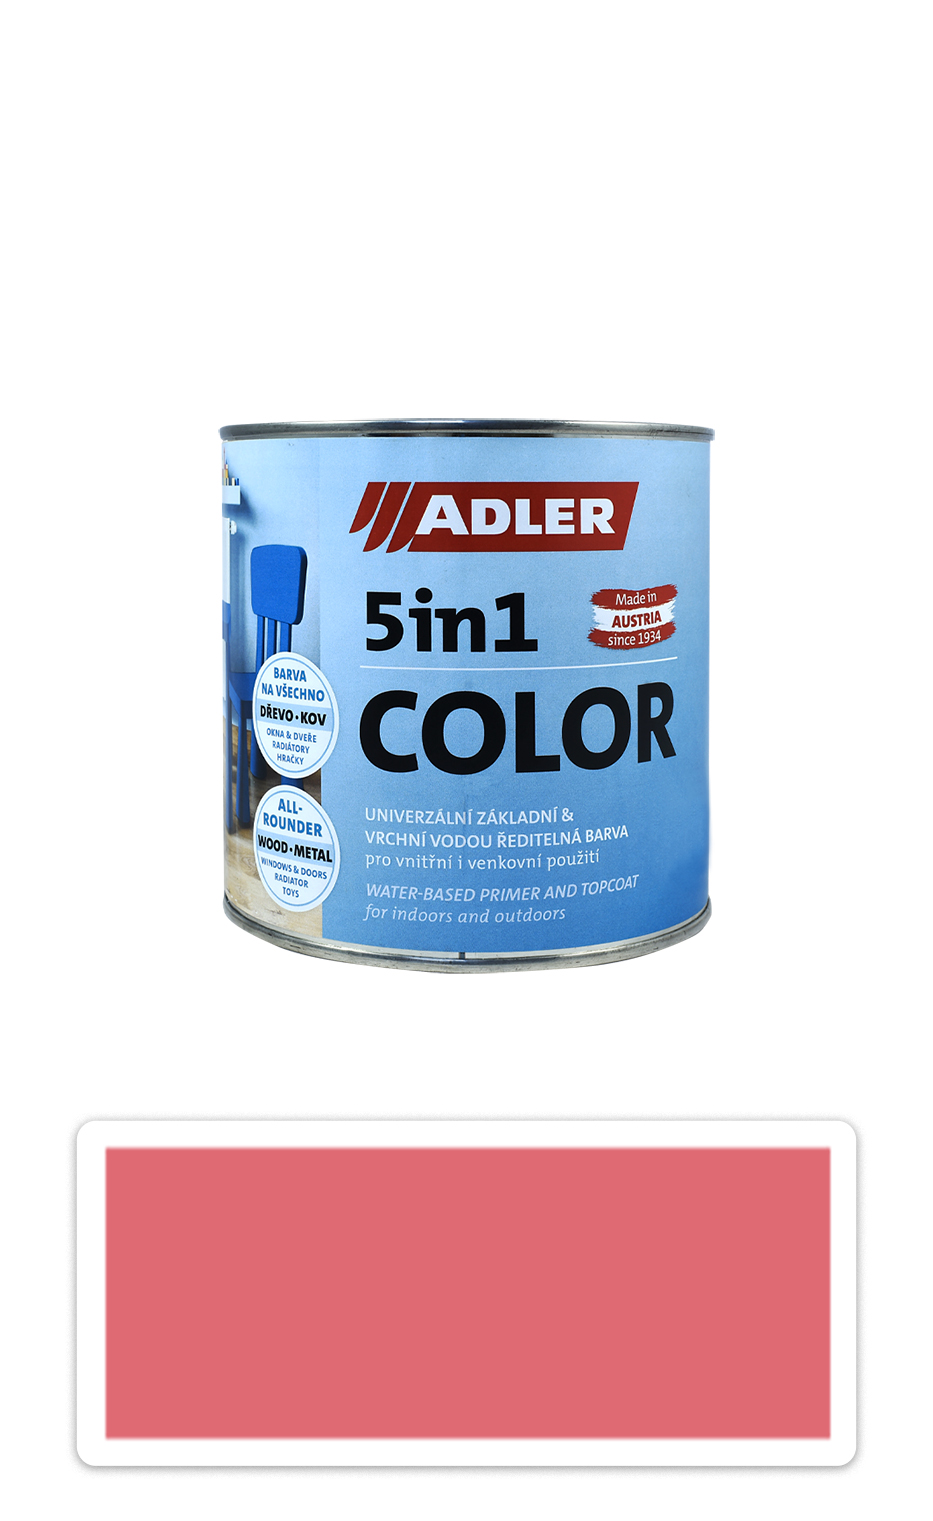 ADLER 5in1 Color - univerzálna vodou riediteľná farba 0.75 l Altrosa / Staroružová RAL 3014